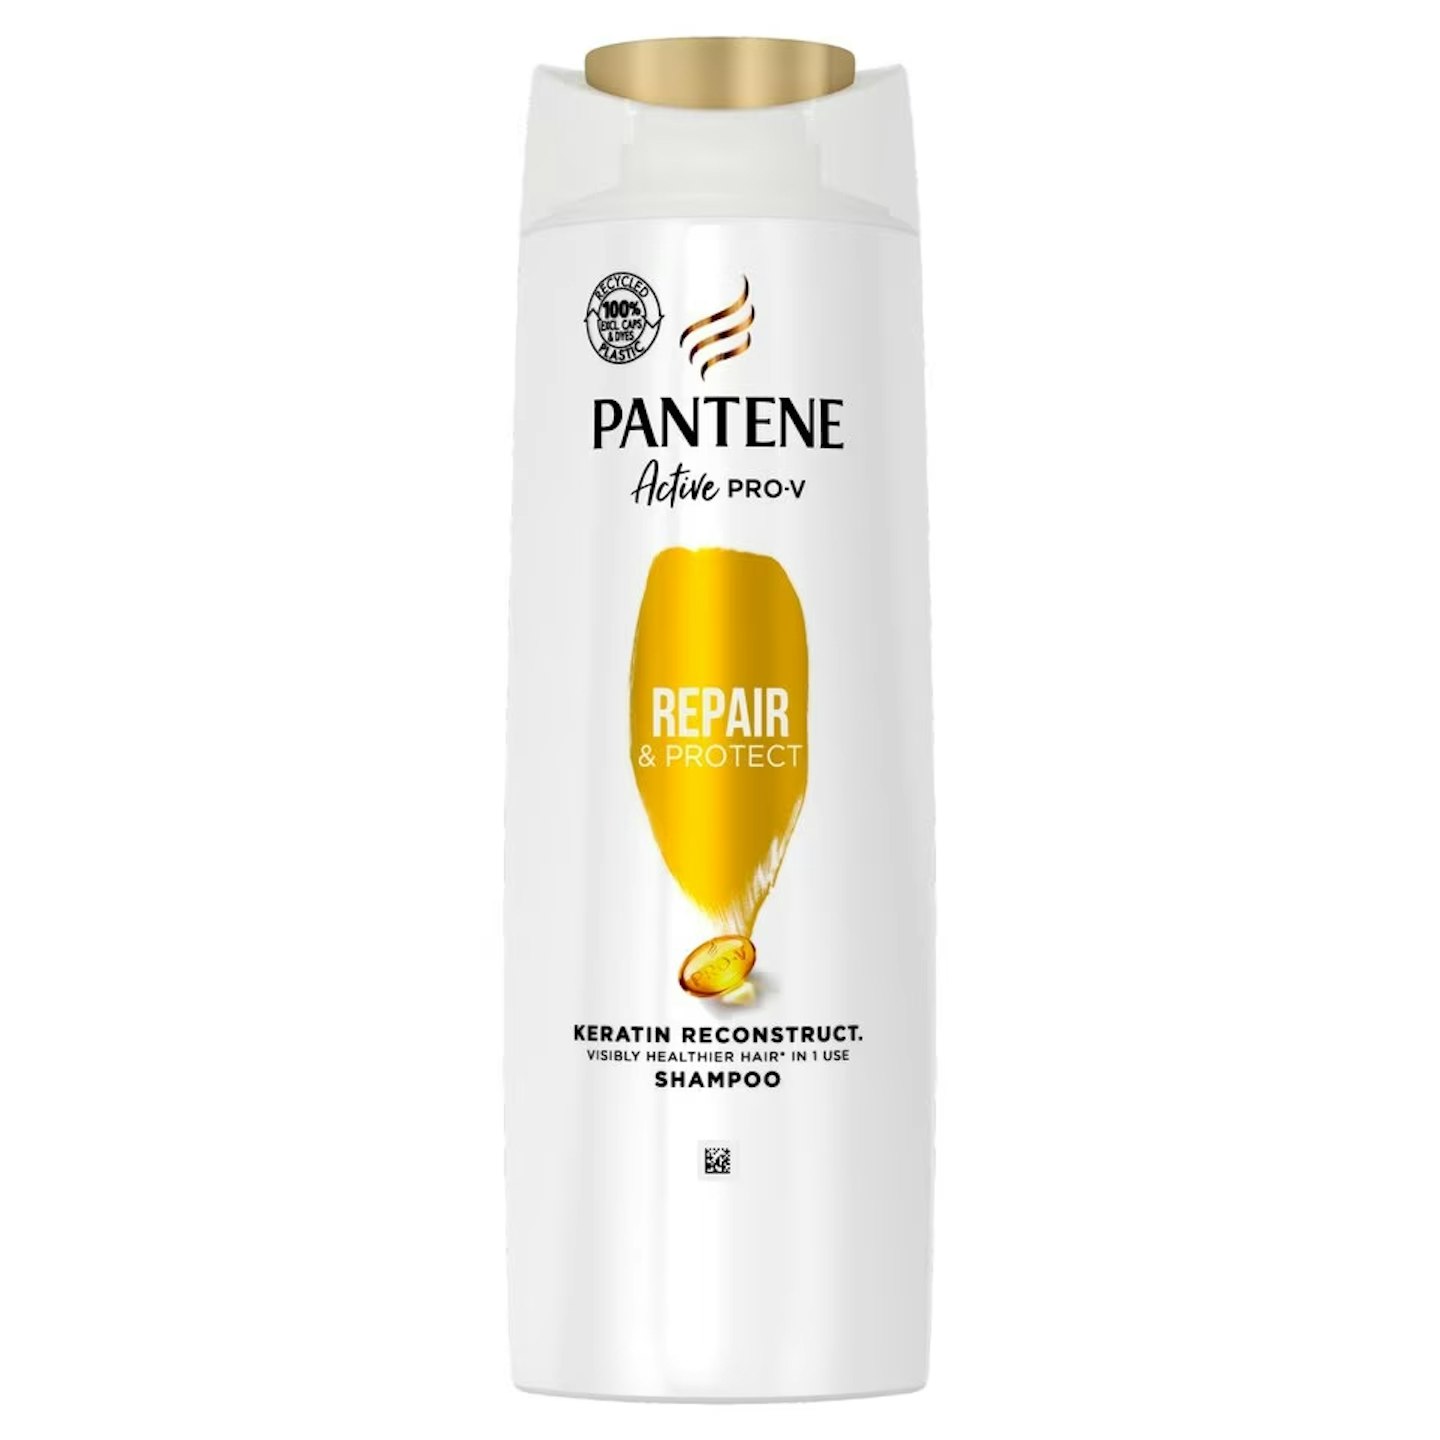 Pantene shampoo for damaged hair